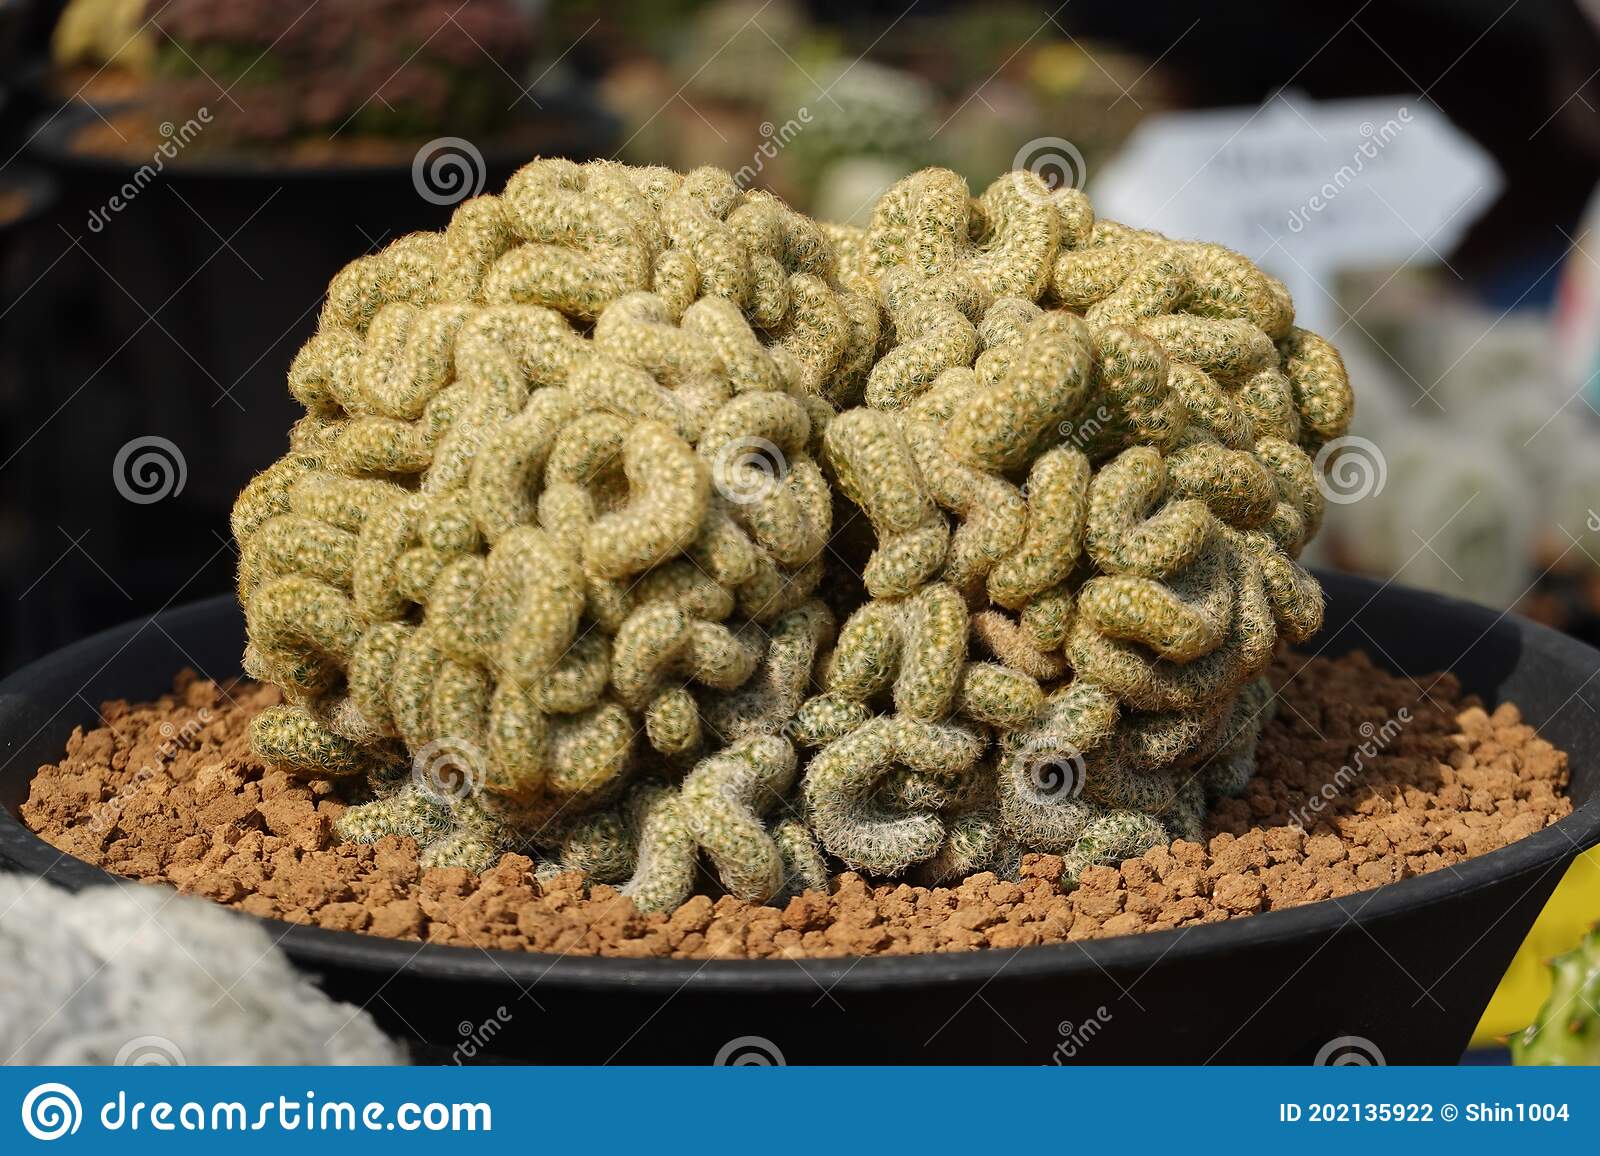 cactus-cerebro-mammillaria-elongata